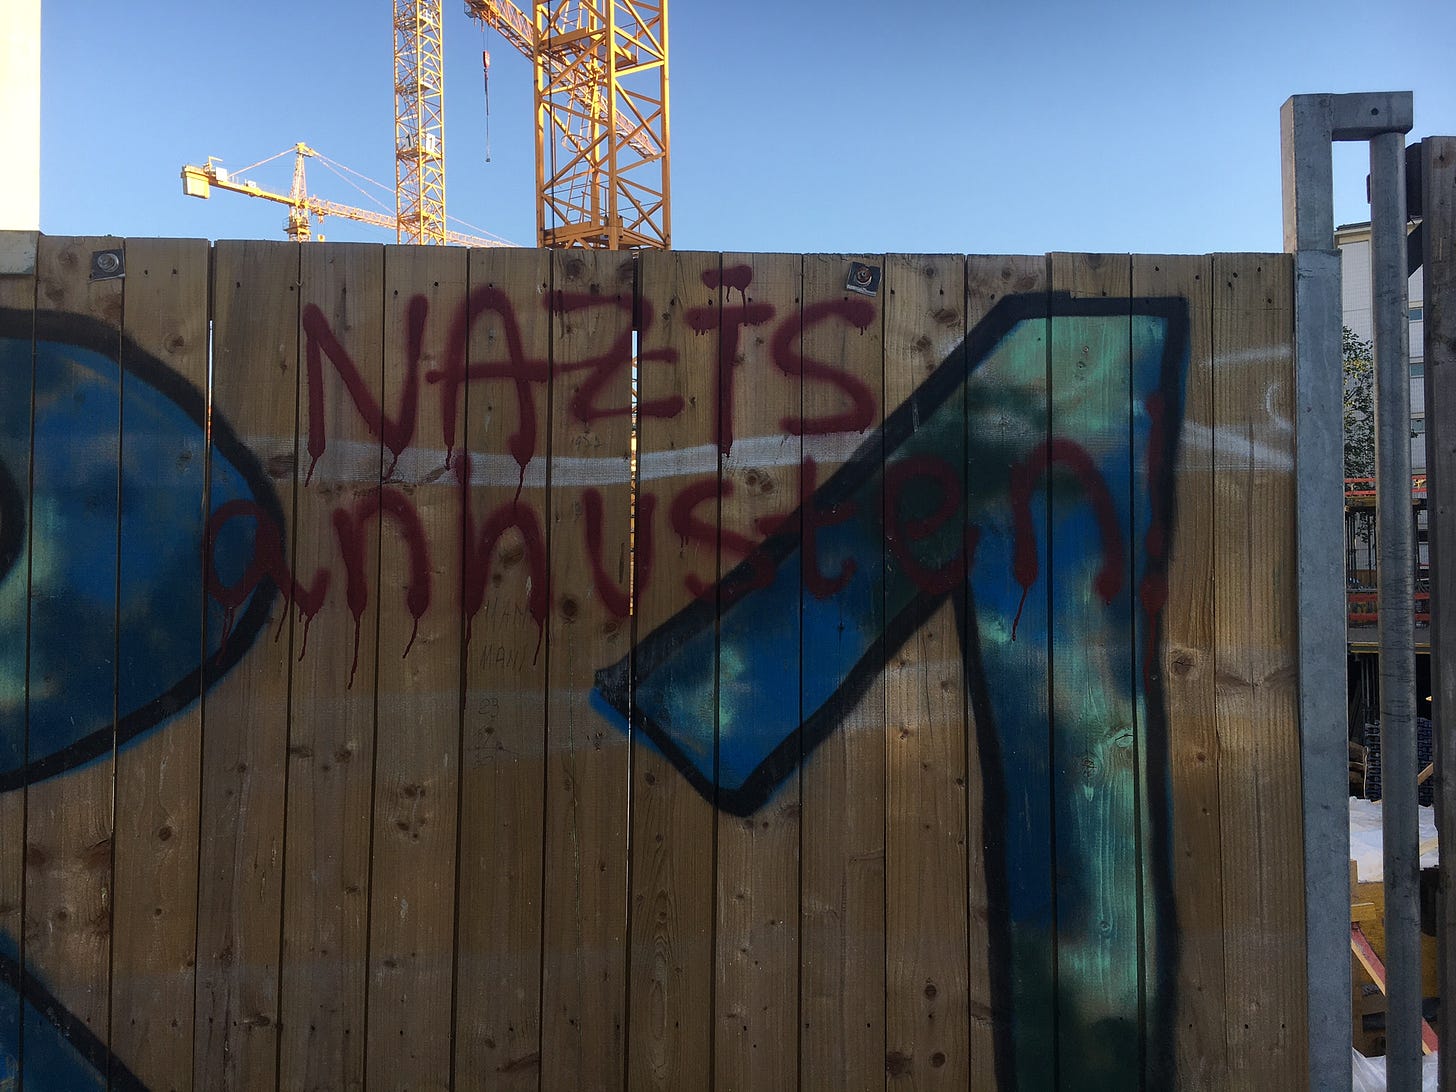 Bauzaun mit dem Graffitti "Nazis anhusten"